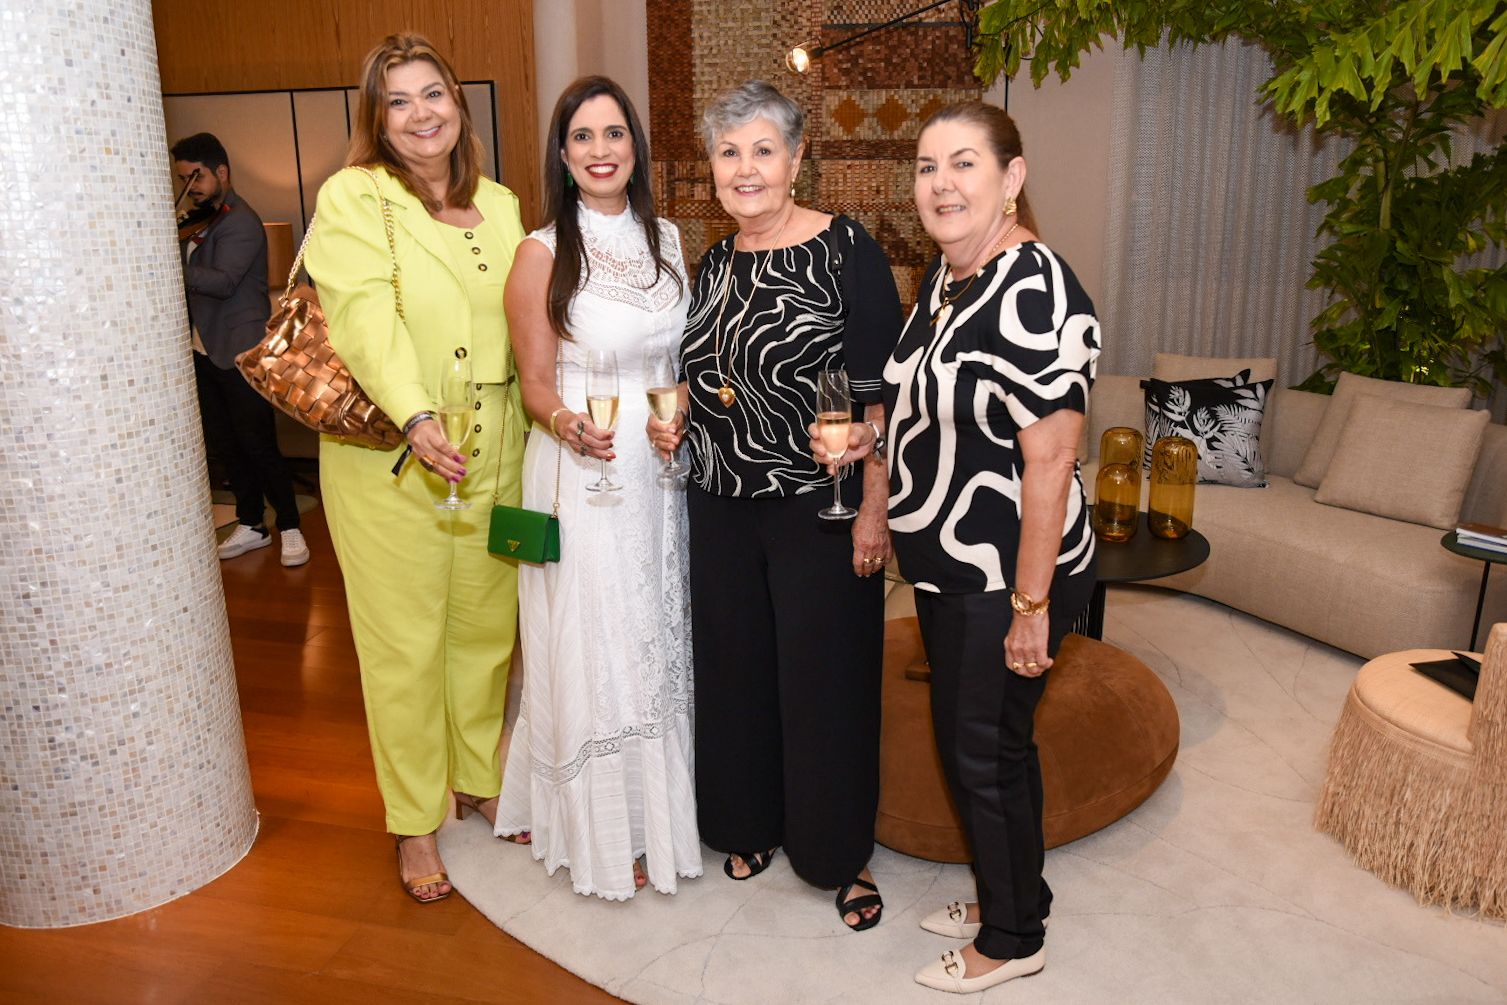  Amalia Fonseca, Juliete Araújo, Fernanda Bahia e Maria Tereza Araújo                    